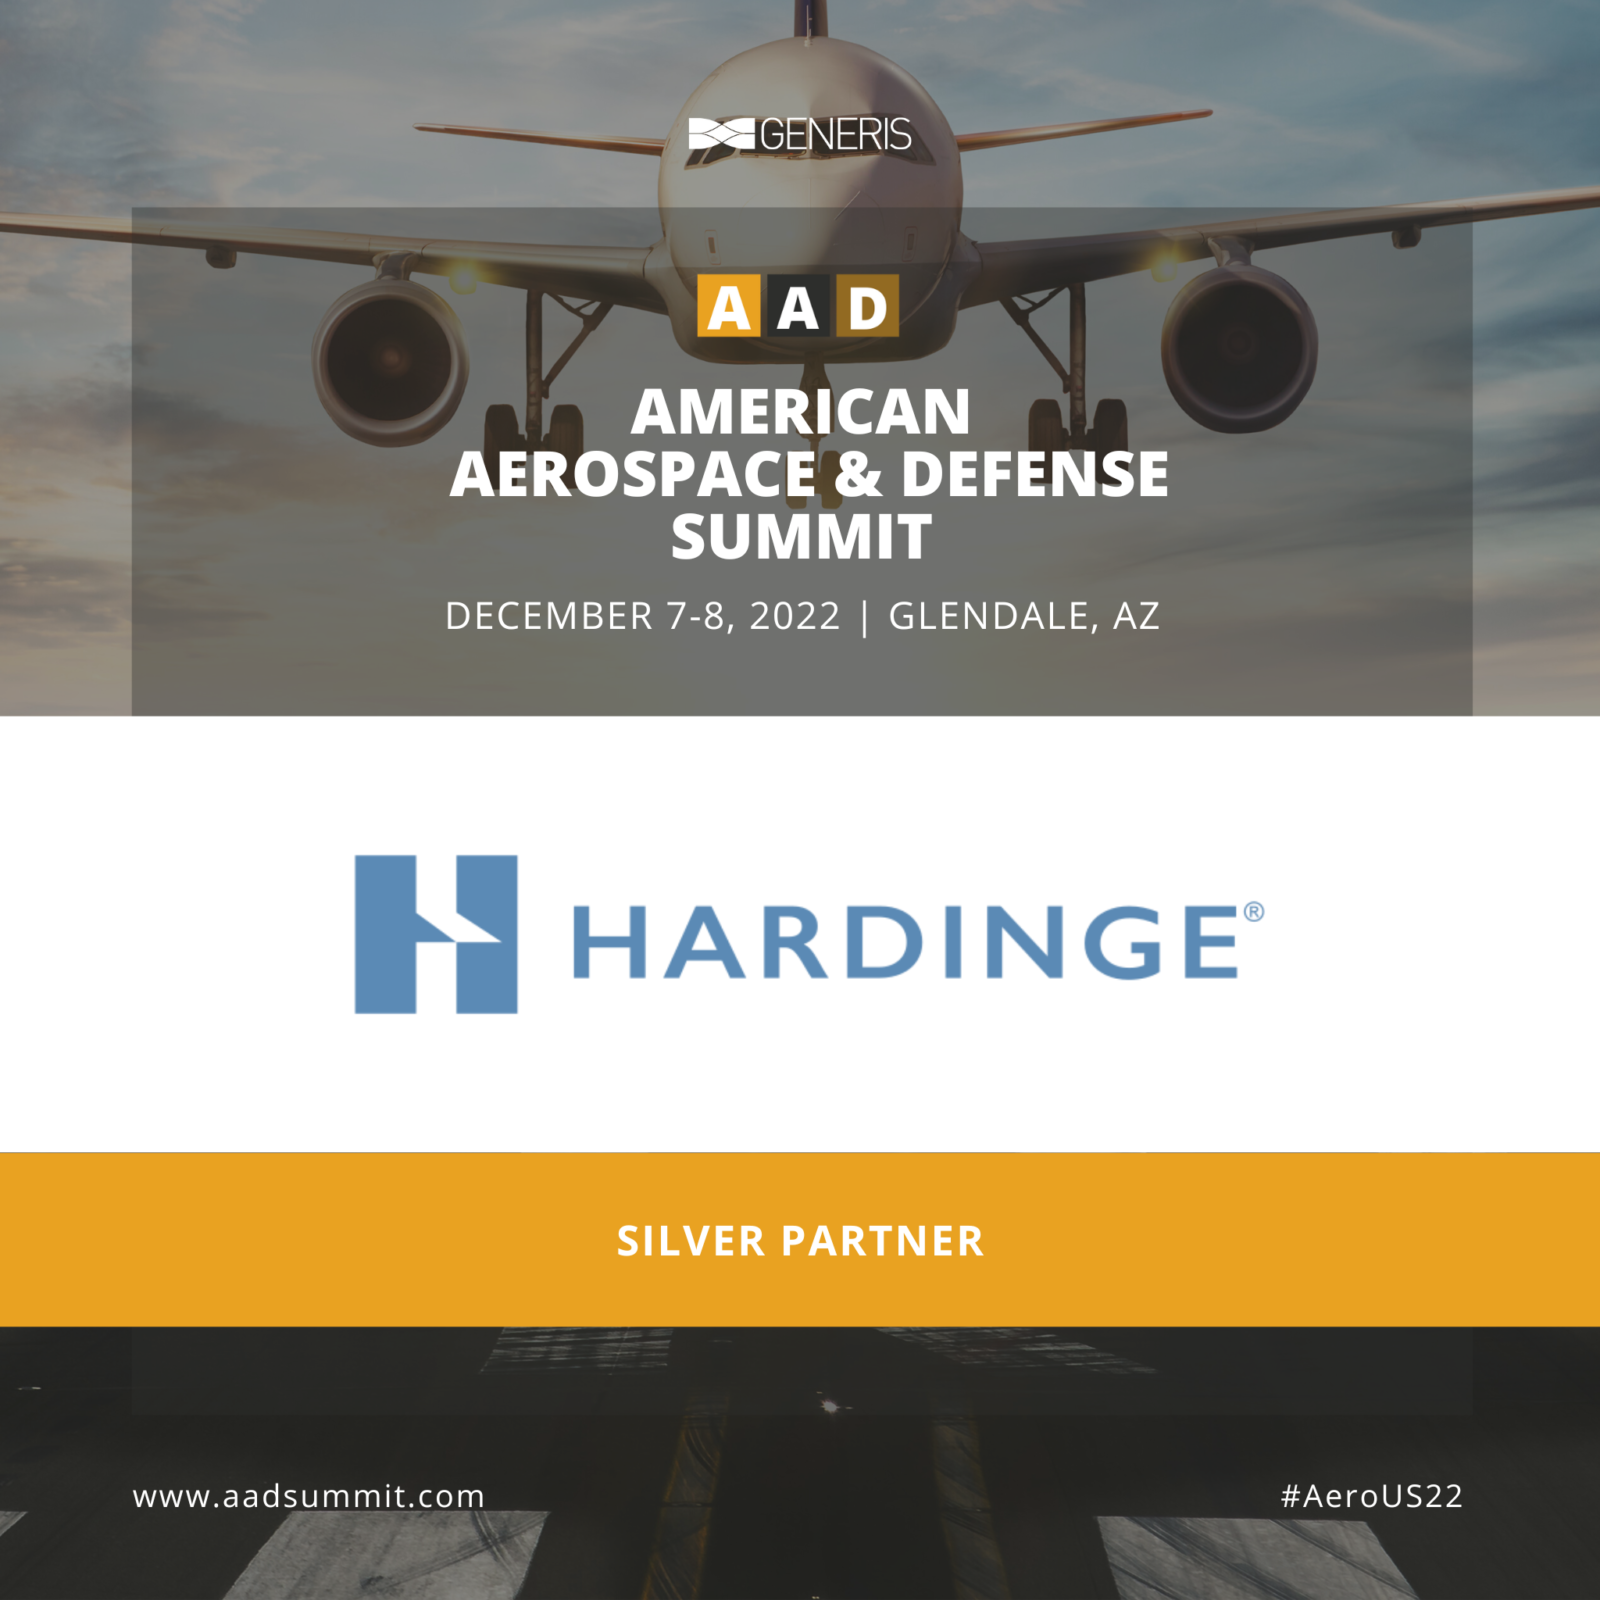 Hardinge at the American Aerospace & Defense Summit 2022